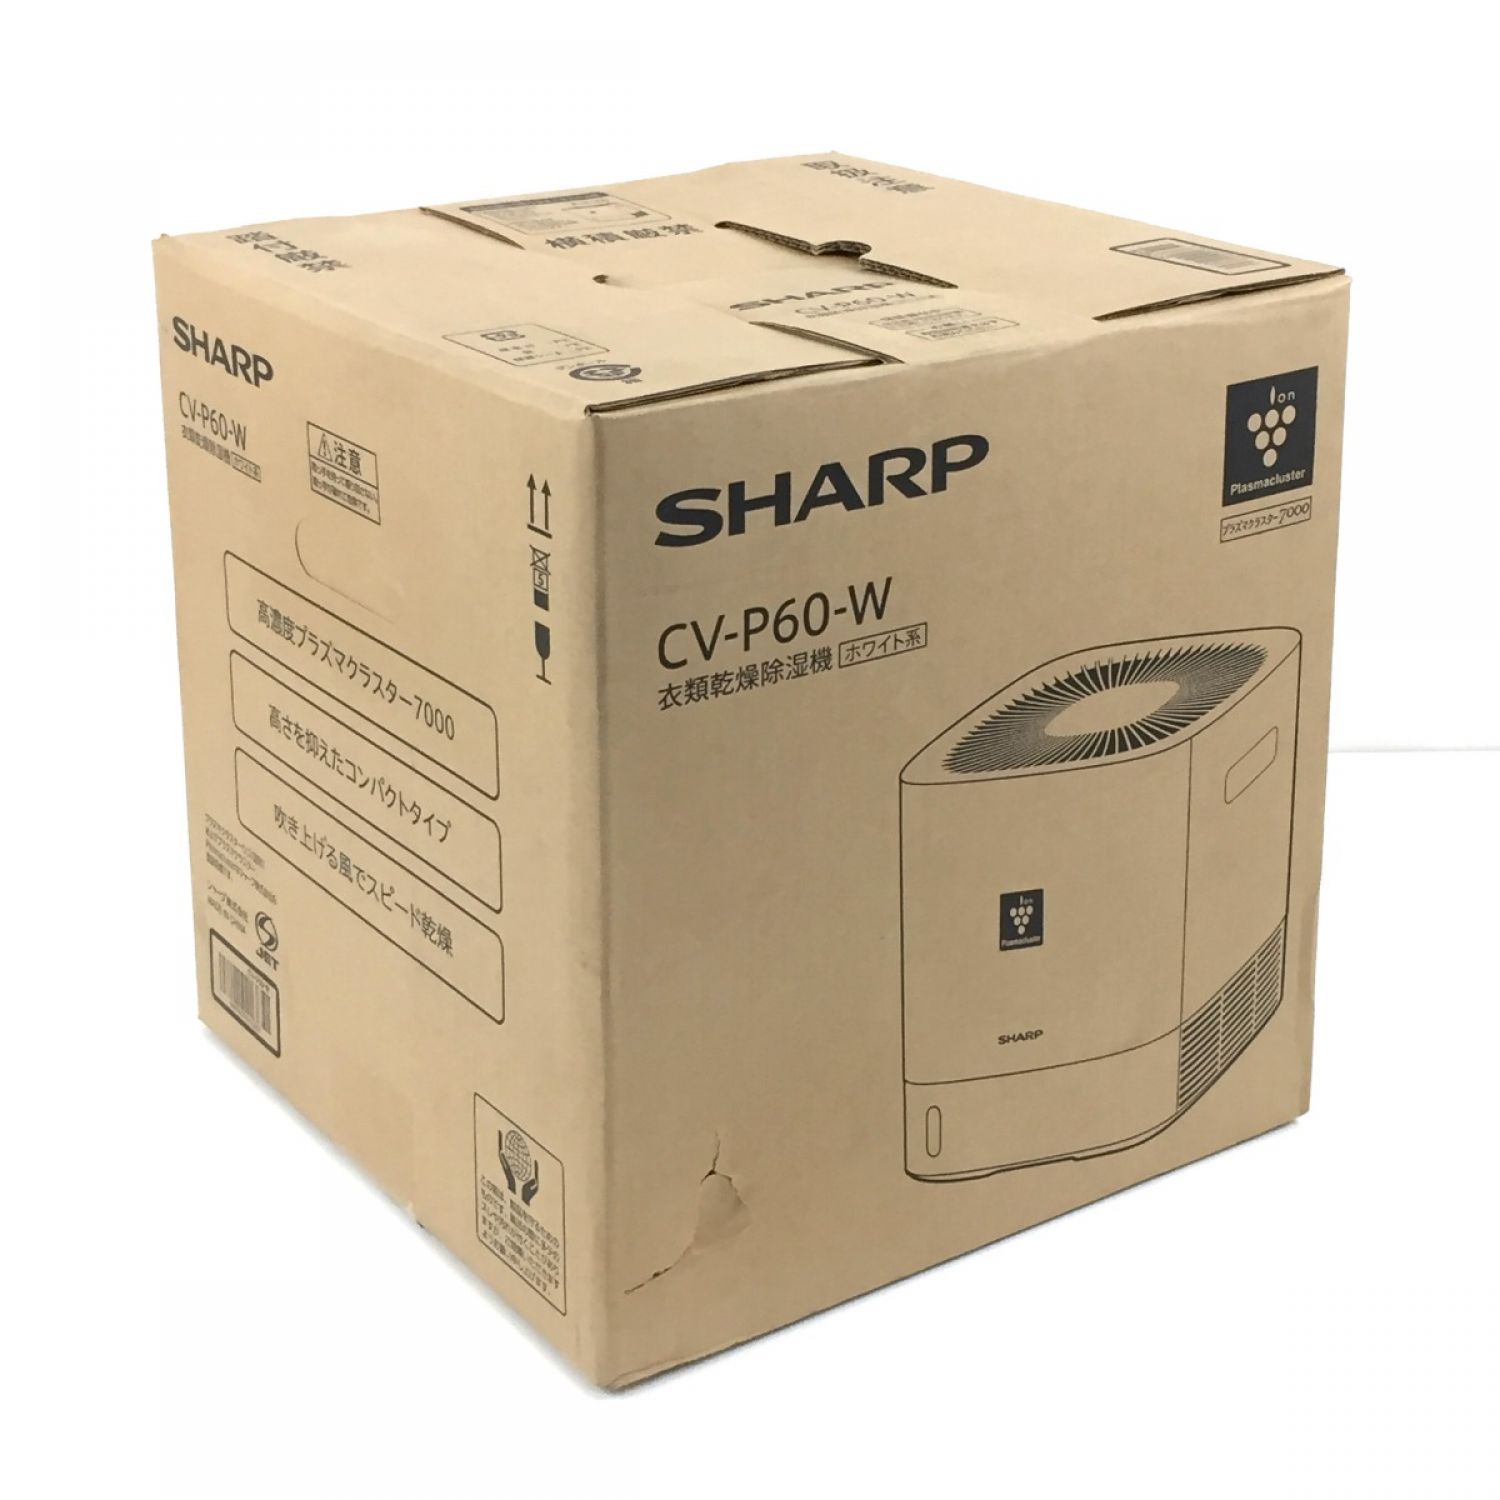 中古】 SHARP シャープ 衣類乾燥除湿機 プラズマクラスター 7000